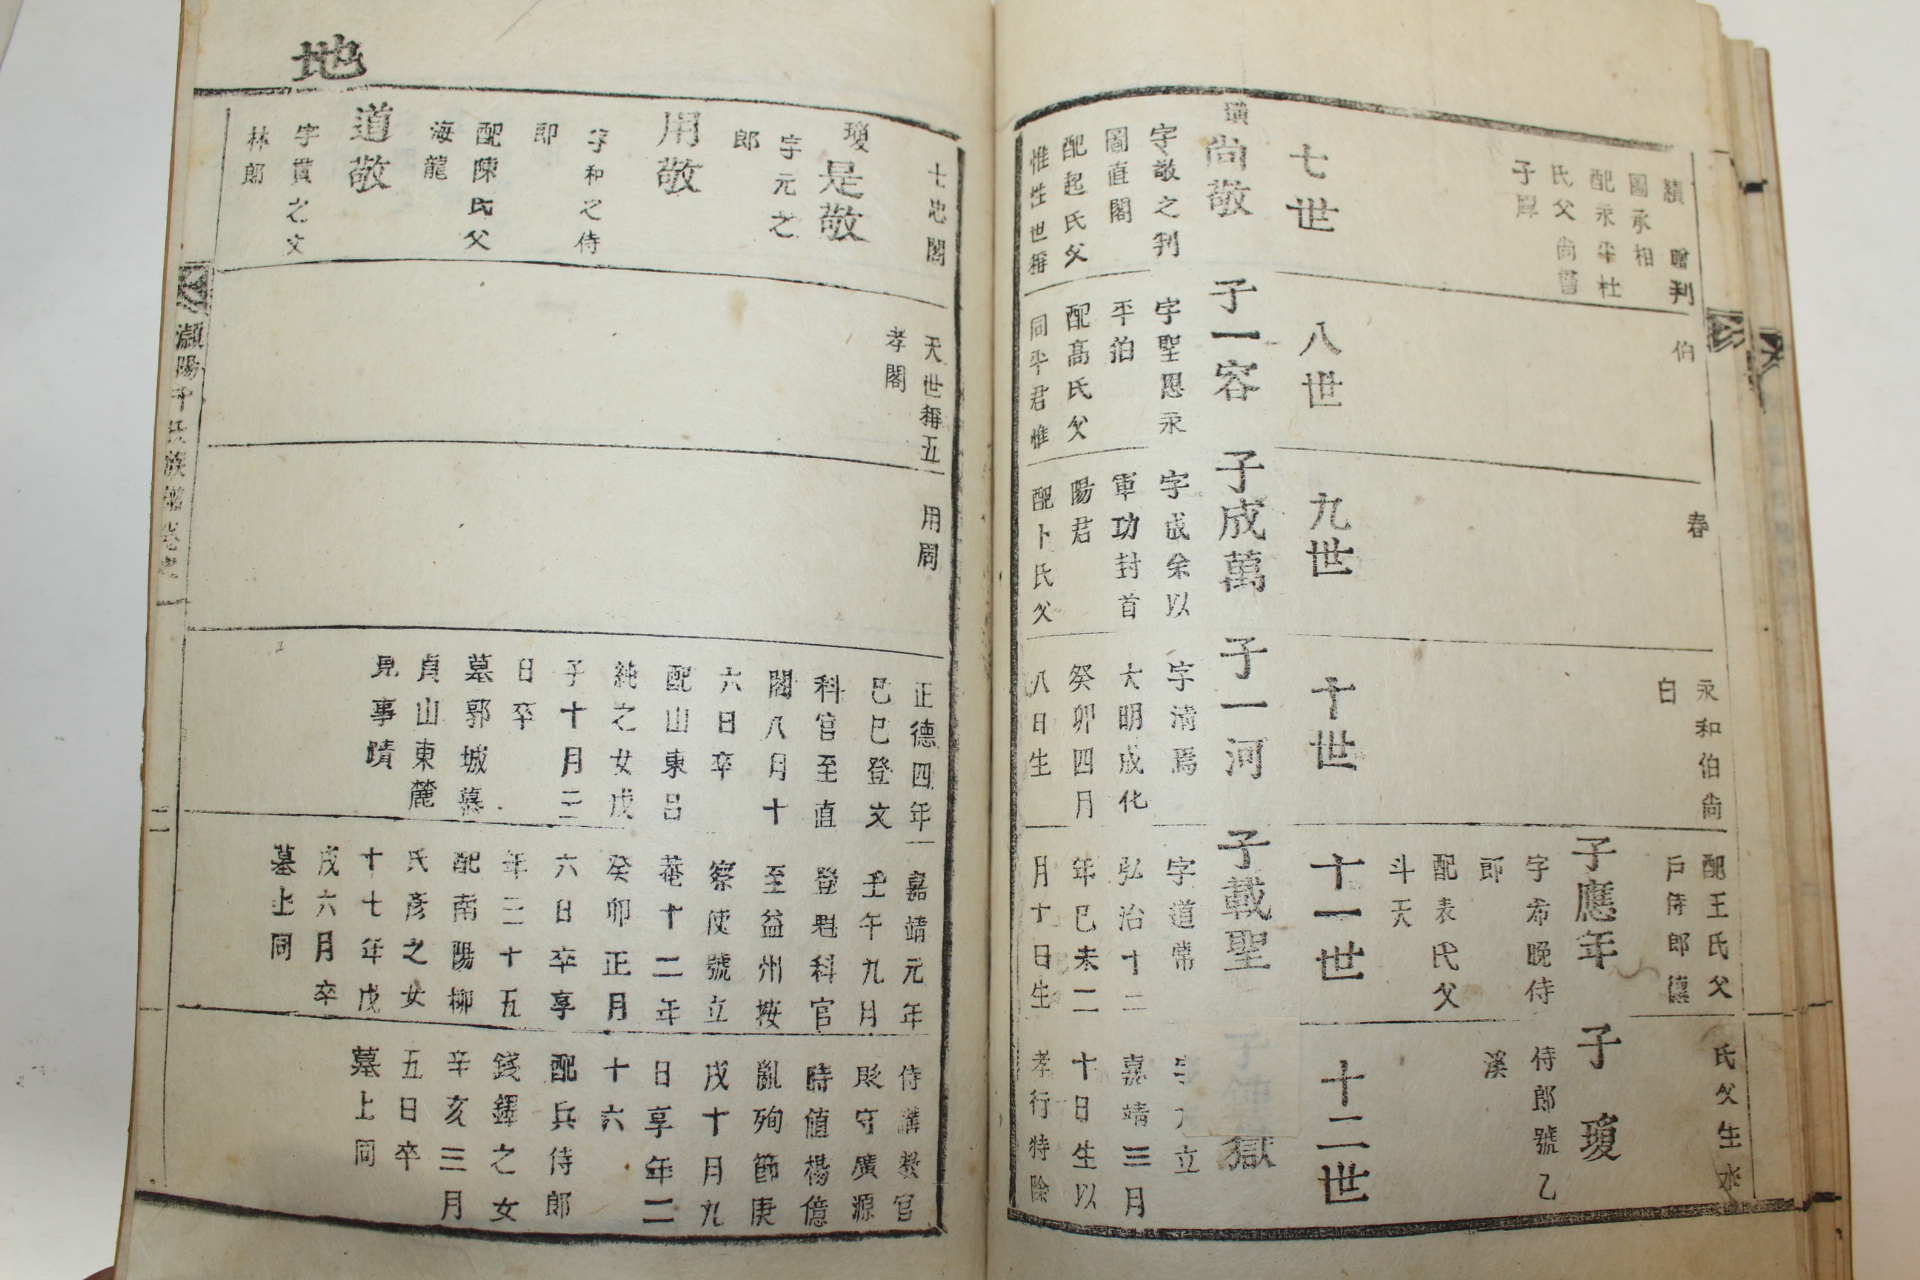 1847년(숭정기원후사정미년) 활자본 영양천씨족보(潁陽千氏族譜) 3책완질